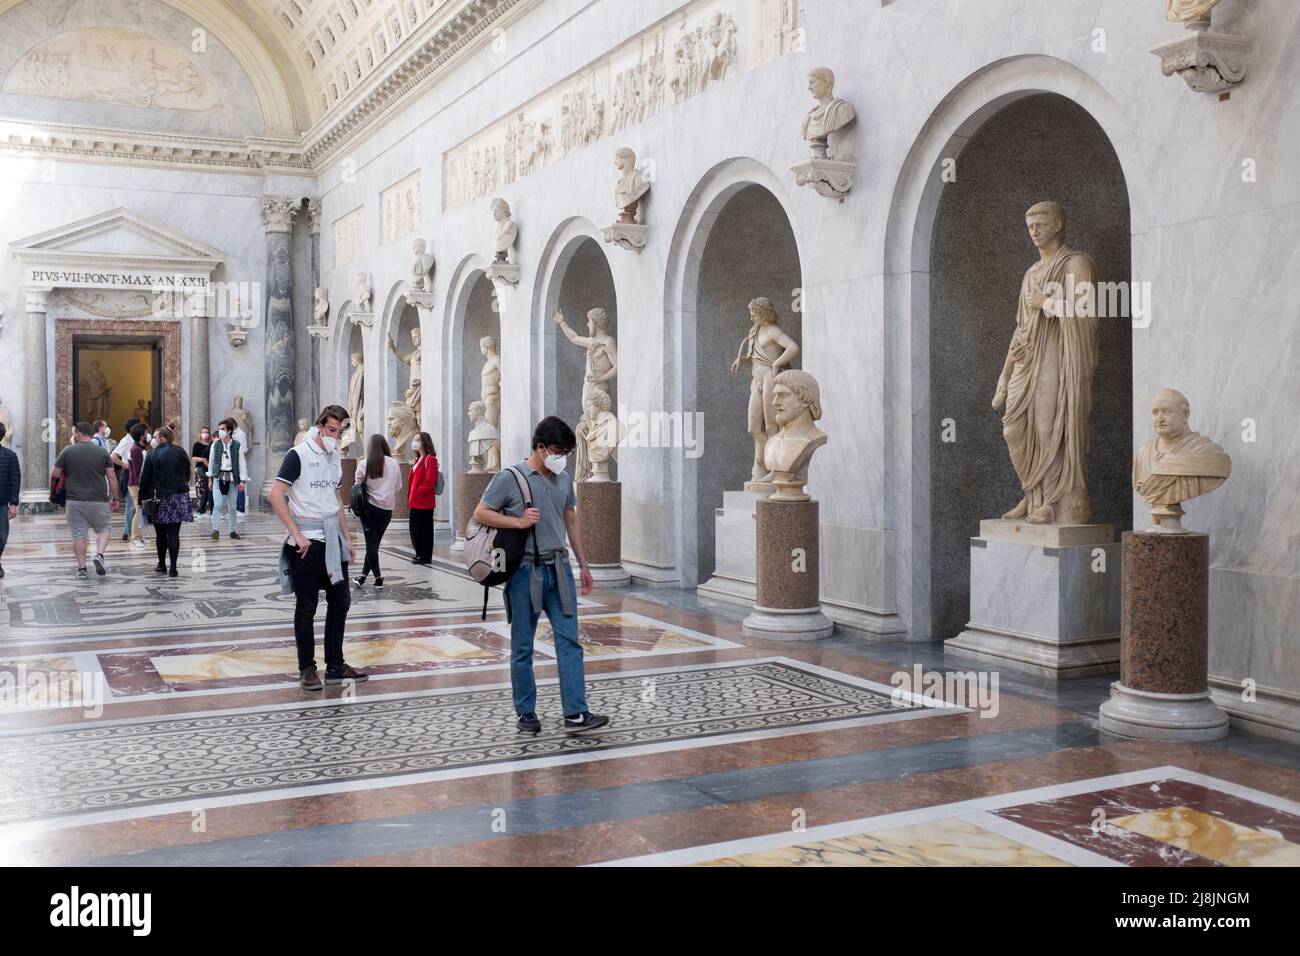 Galerie de sculptures dans le Musée Chiaramonti aux Musèmes du Vatican à Rome Italie Banque D'Images